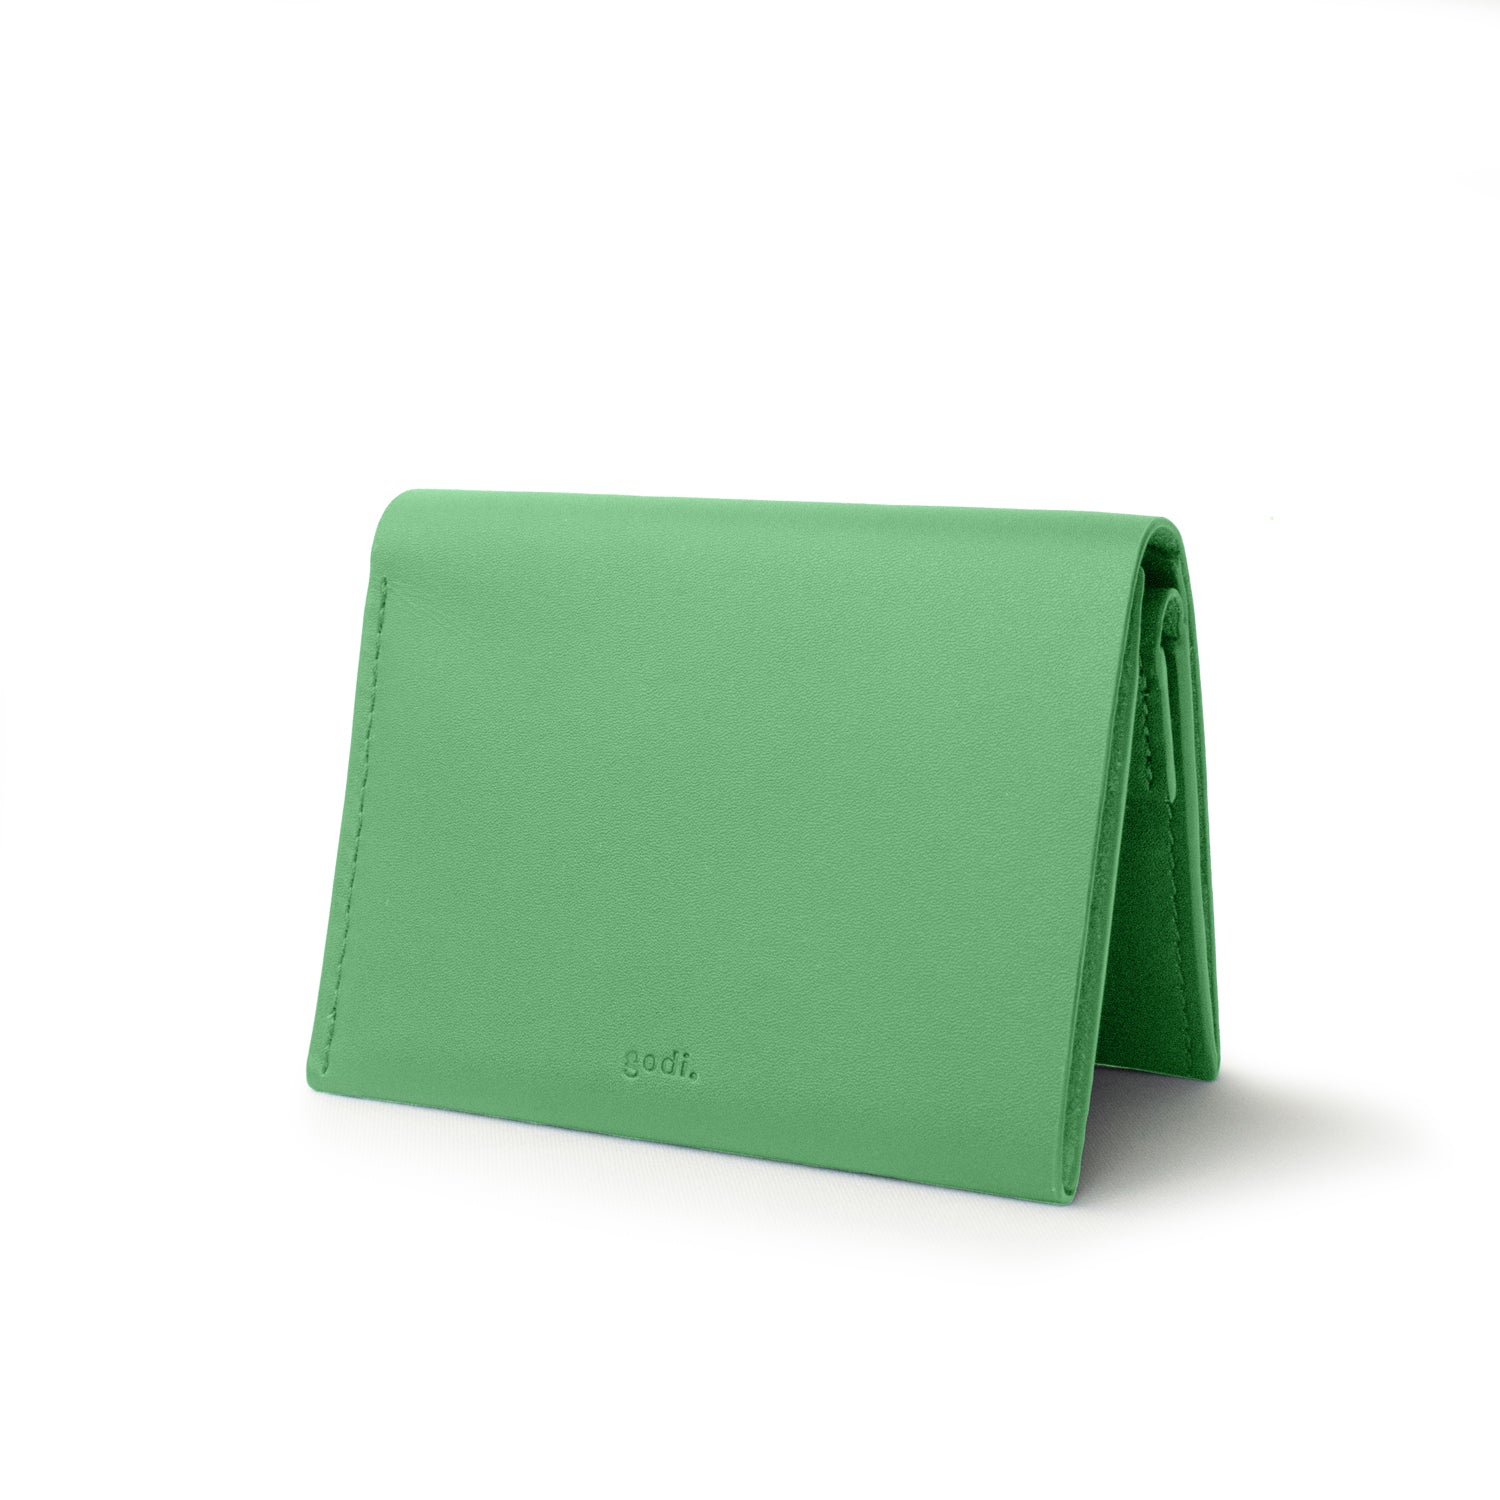 All-in-One Wallet in Dark Green